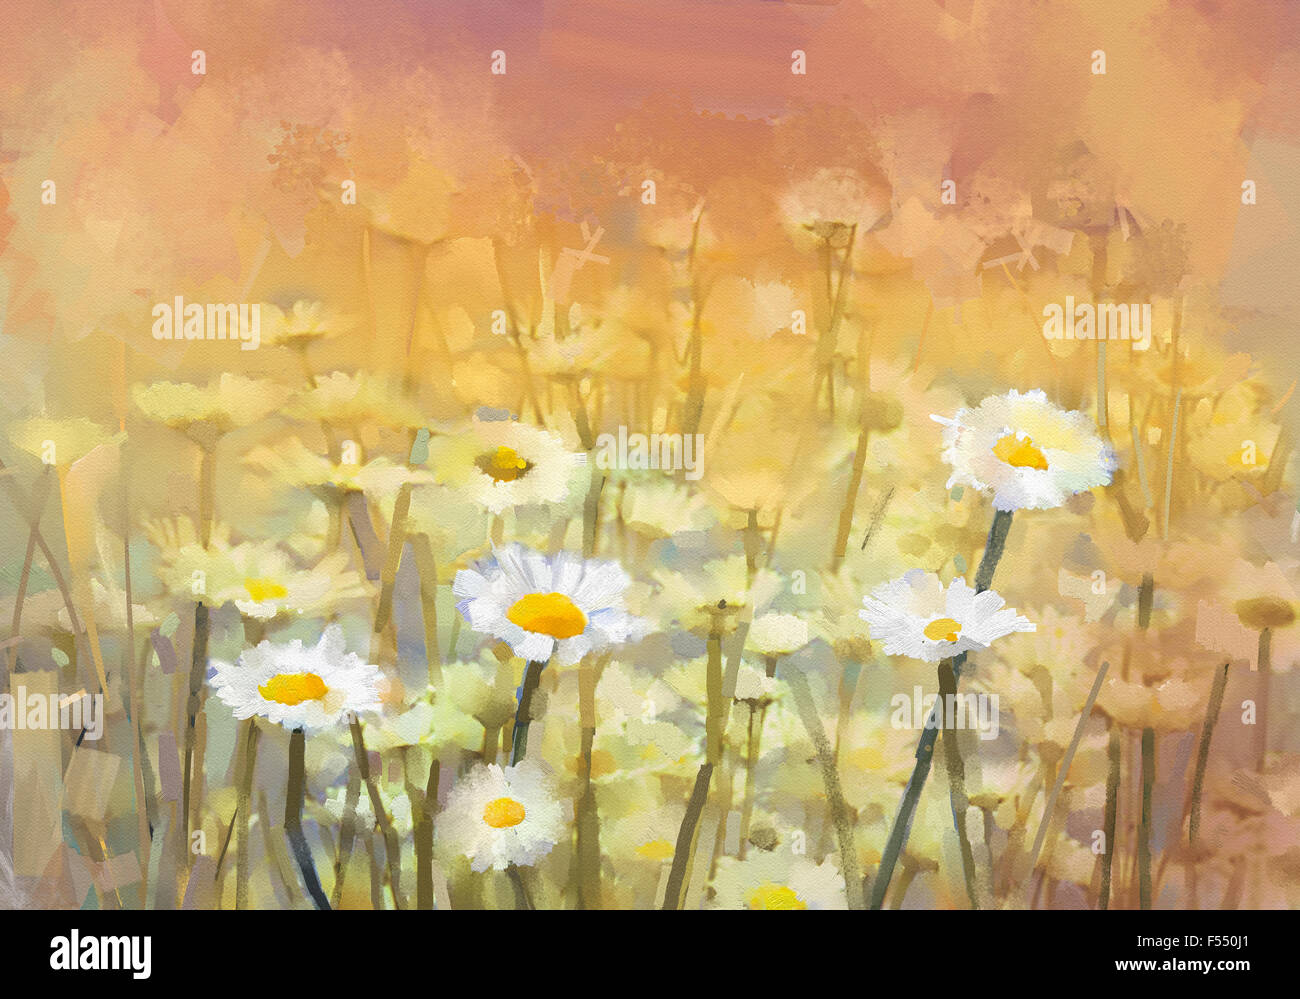 Peinture à l'huile permettant de relier en champ de fleurs de camomille au lever du soleil. Vintage flowers white flower daisy à Meadow. Arrière-plan de la campagne de printemps Banque D'Images